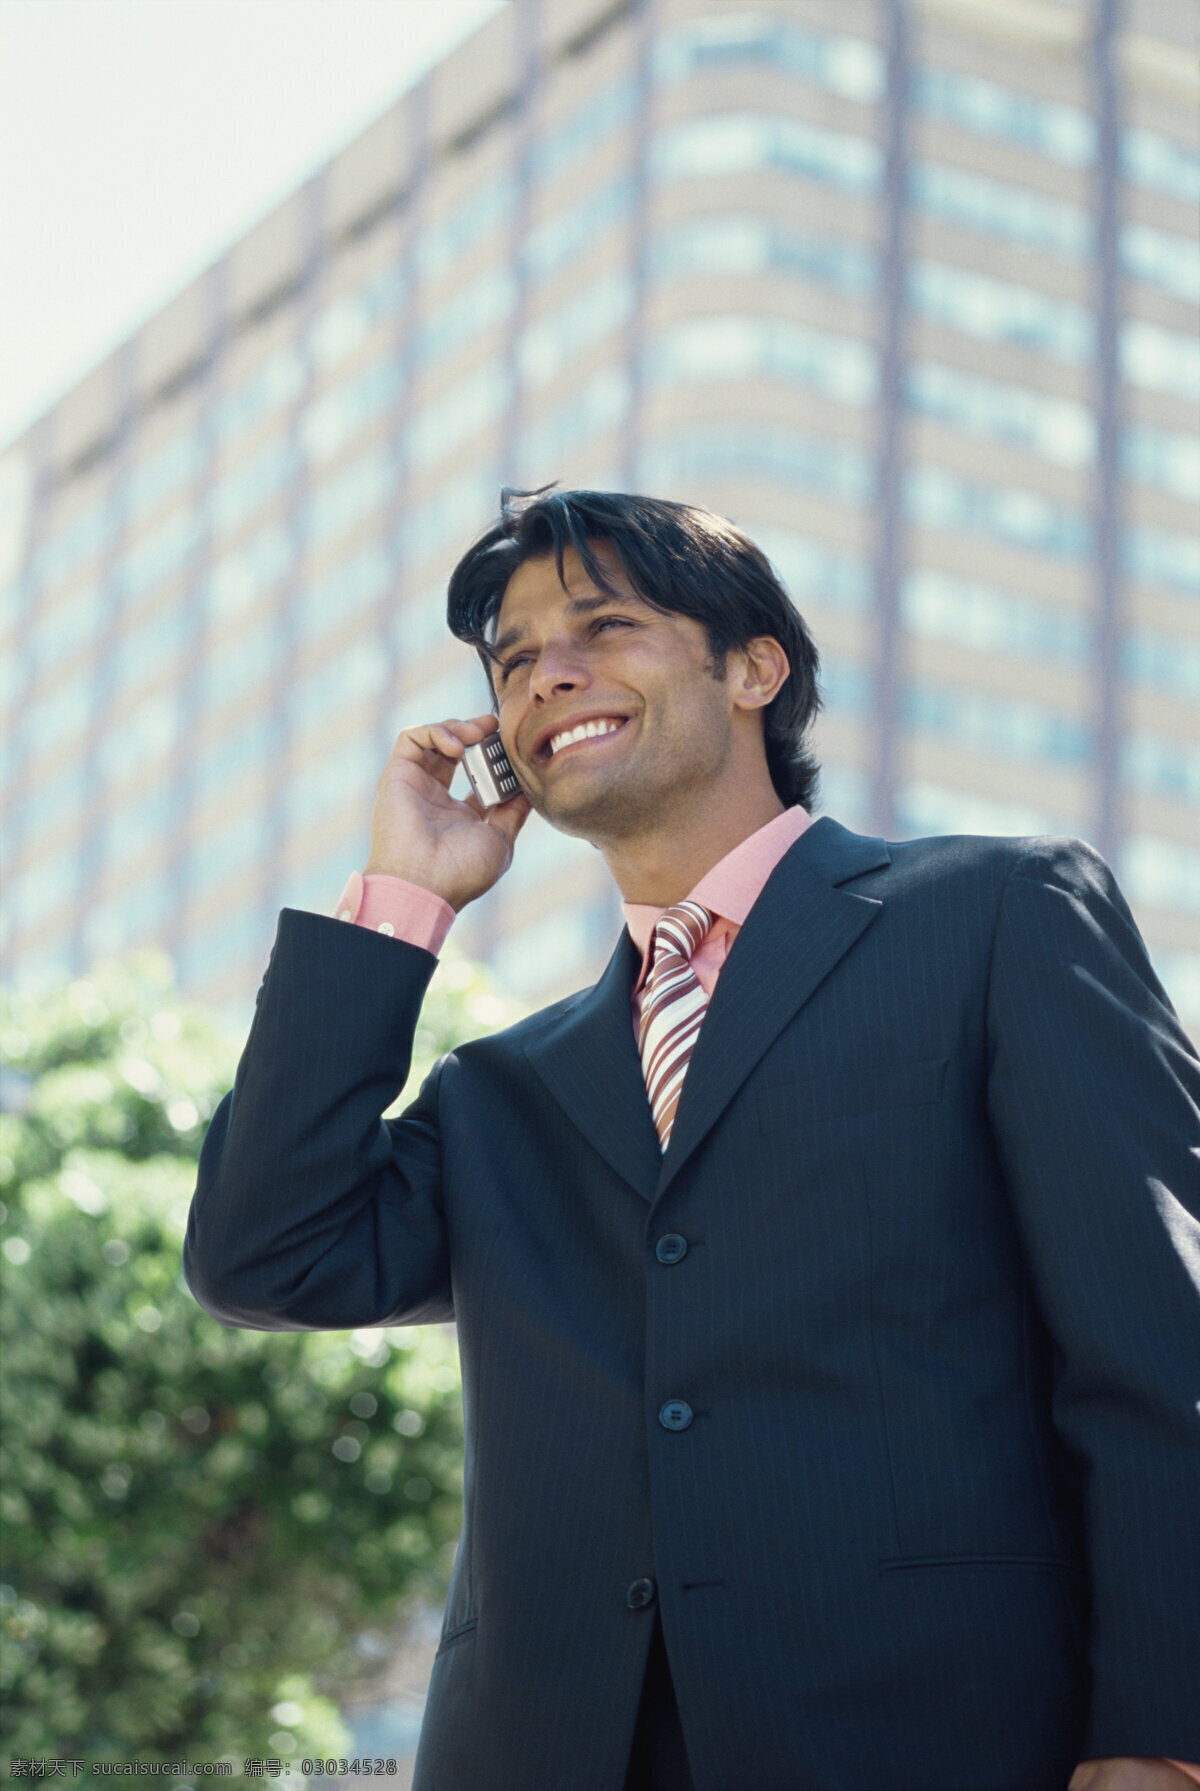 手机 商务 男士 商界领袖 职业人物 职业男性 商务男士 成功男人 白领 自信 打电话 微笑 商务人士 人物图片